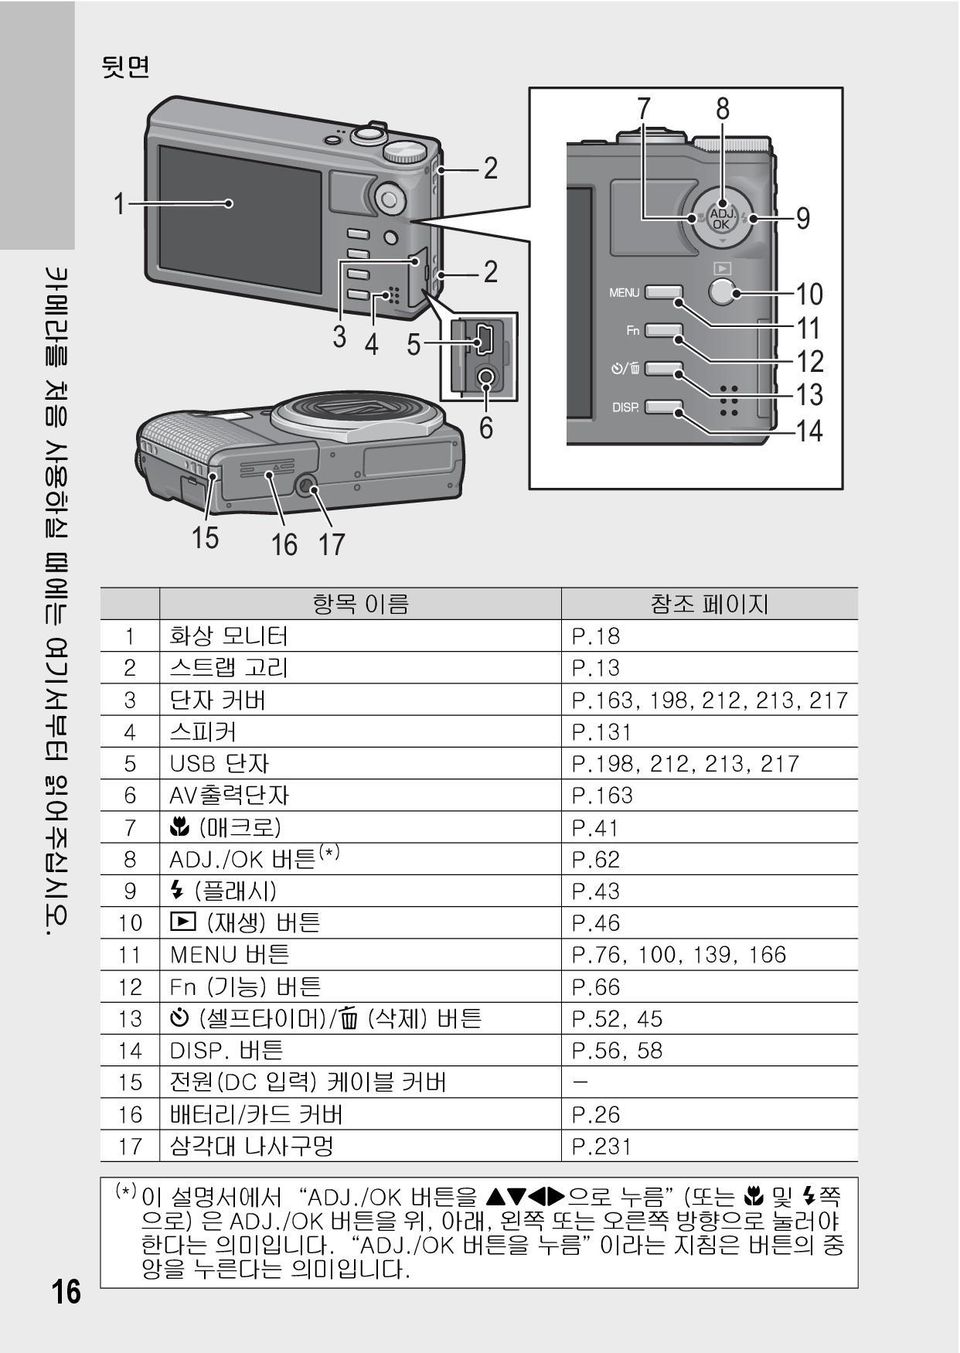 43 10 6 (재생) 버튼 P.46 11 MENU 버튼 P.76, 100, 139, 166 12 Fn (기능) 버튼 P.66 13 t (셀프타이머)/D (삭제) 버튼 P.52, 45 14 DISP. 버튼 P.56, 58 15 전원(DC 입력) 케이블 커버 - 16 배터리/카드 커버 P.